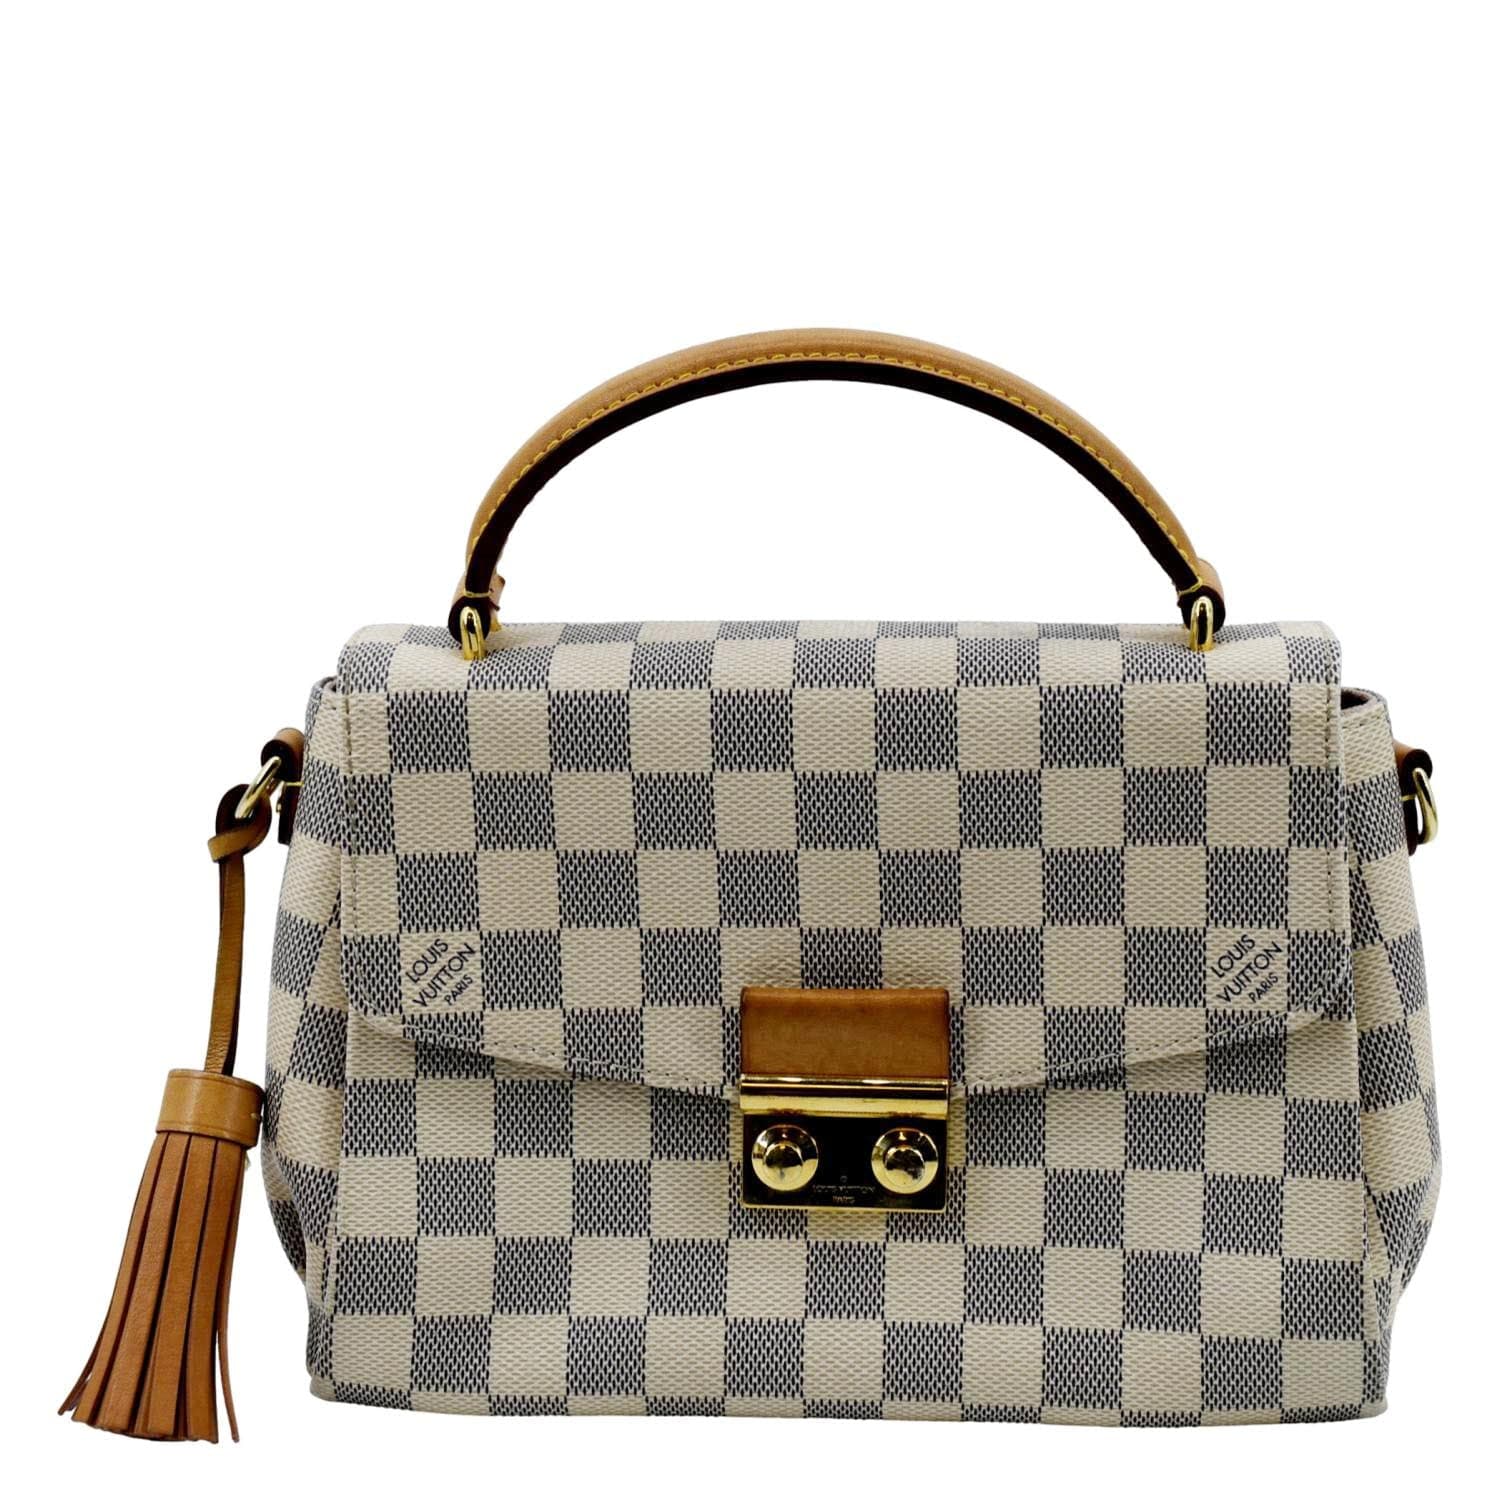 Louis Vuitton Croisette Damier Azur Satchel Crossbody Bag